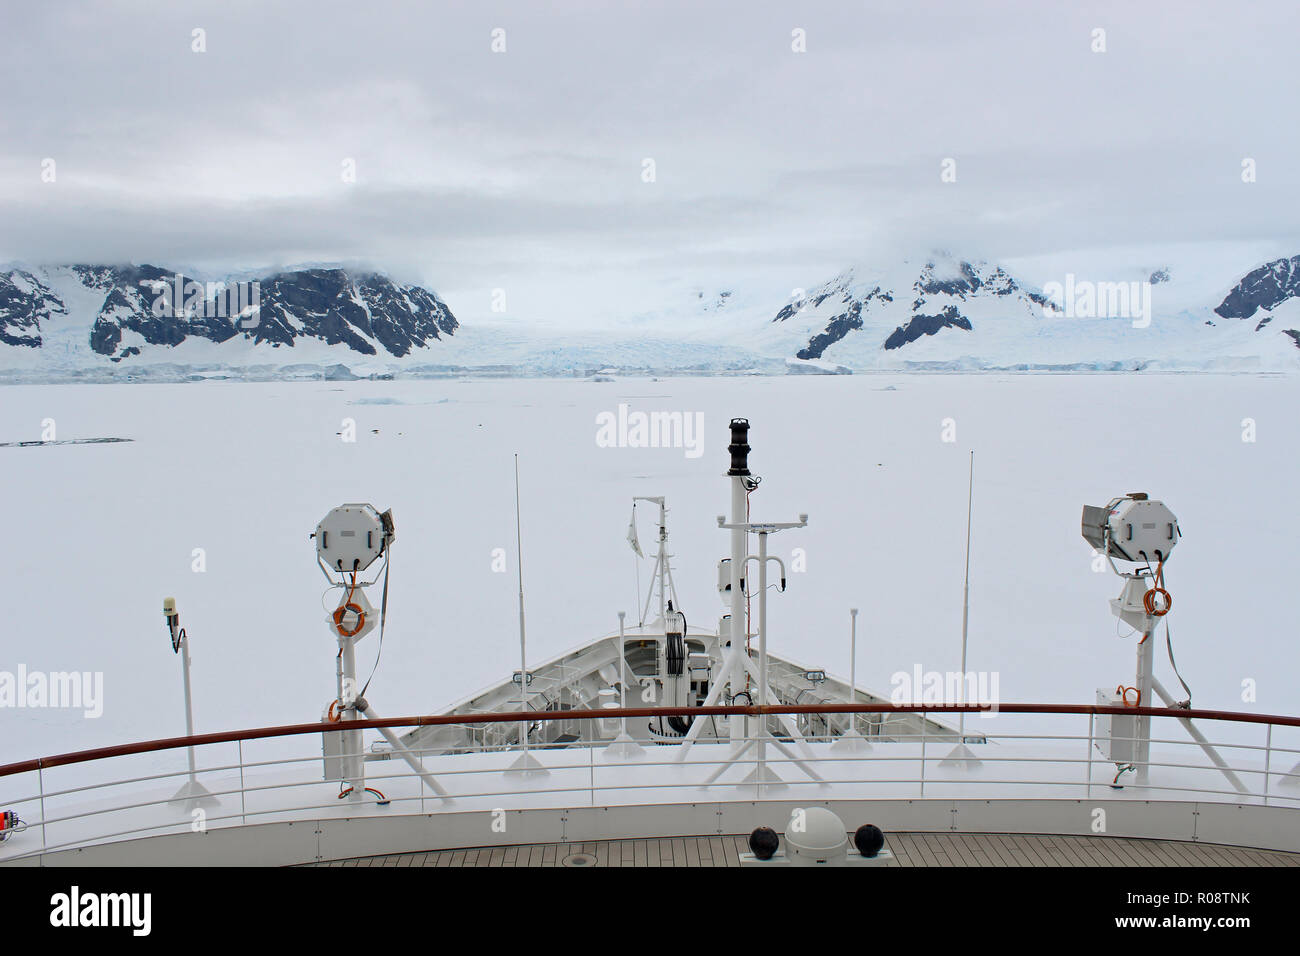 Point de vue d'un antarctique expedition cruise ship avec son arc dans un iceflow dans les mers qui entourent la péninsule Antarctique Banque D'Images